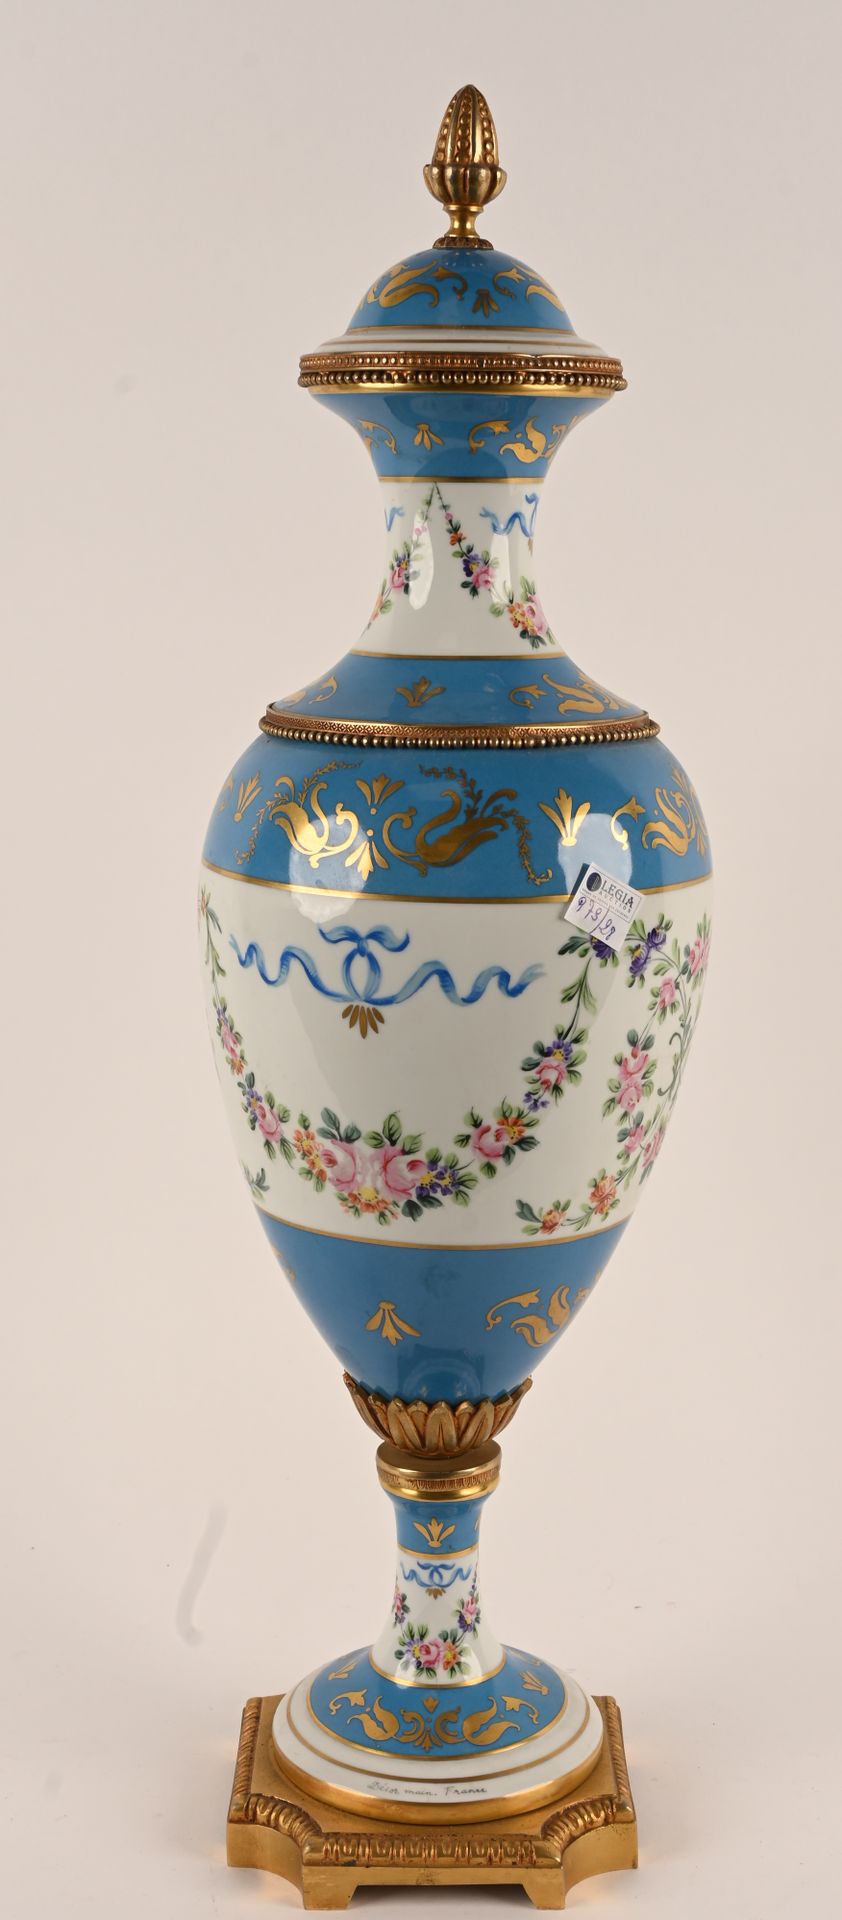 Dans le goût de Sèvres. Nello stile di Sèvres.
Grande vaso coperto in porcellana&hellip;